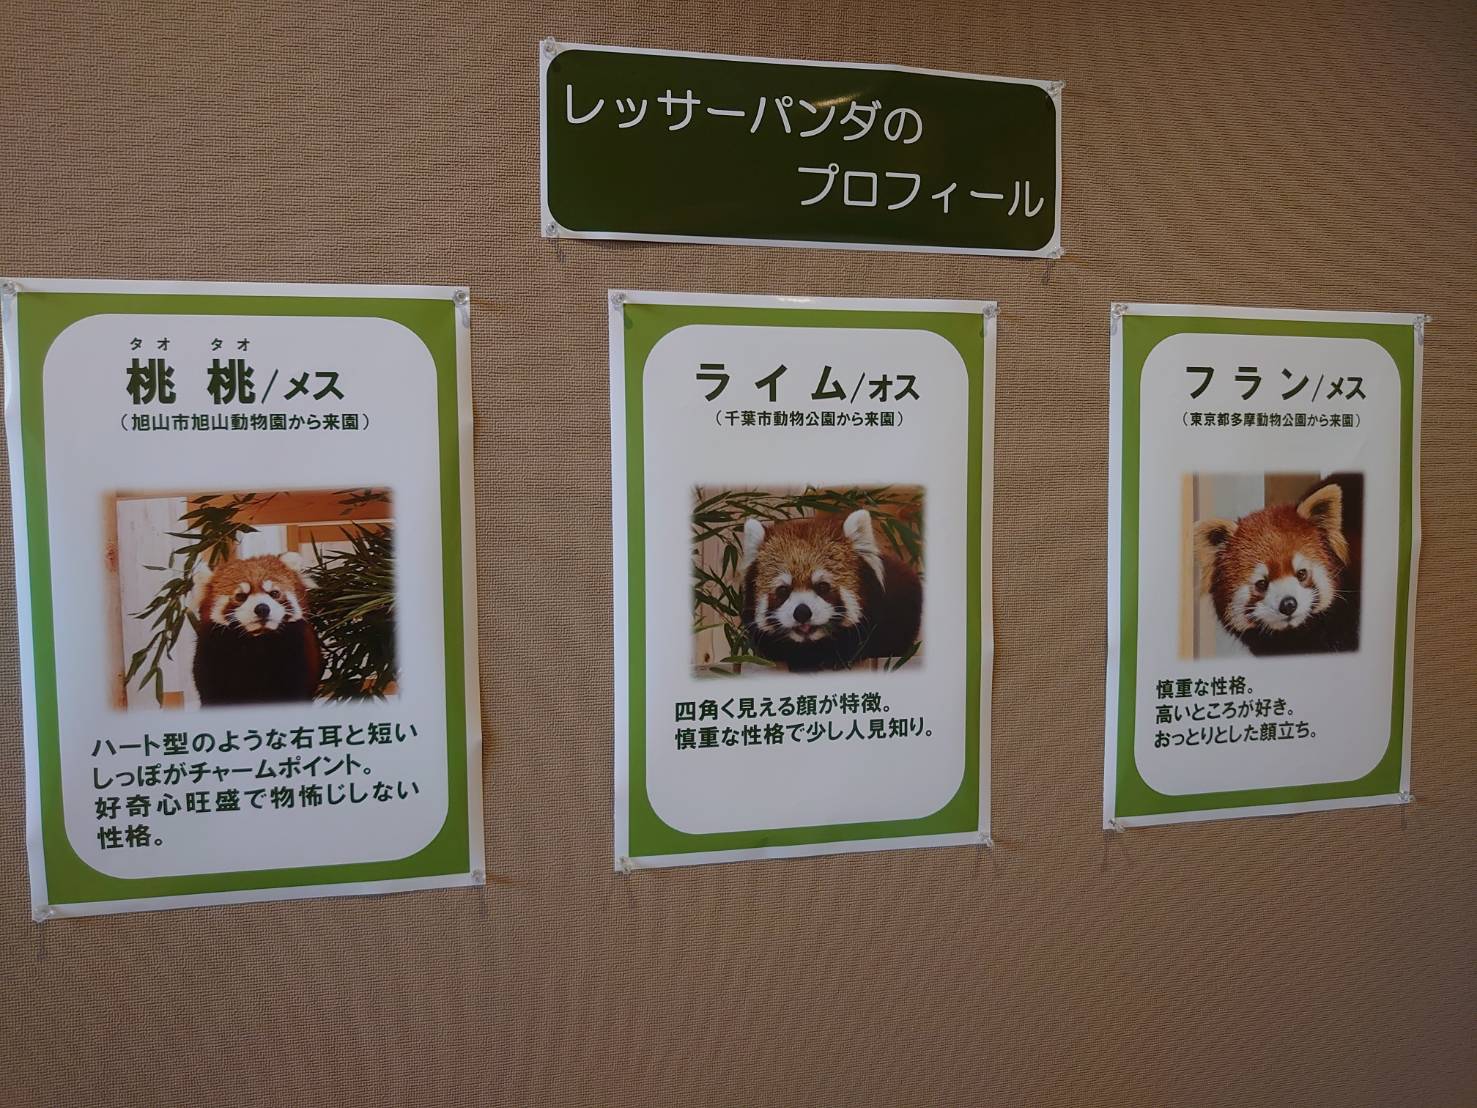 レッサーパンダ目当てに長蛇の列 桐生が岡動物園 桐生市ポータルサイト はたのね